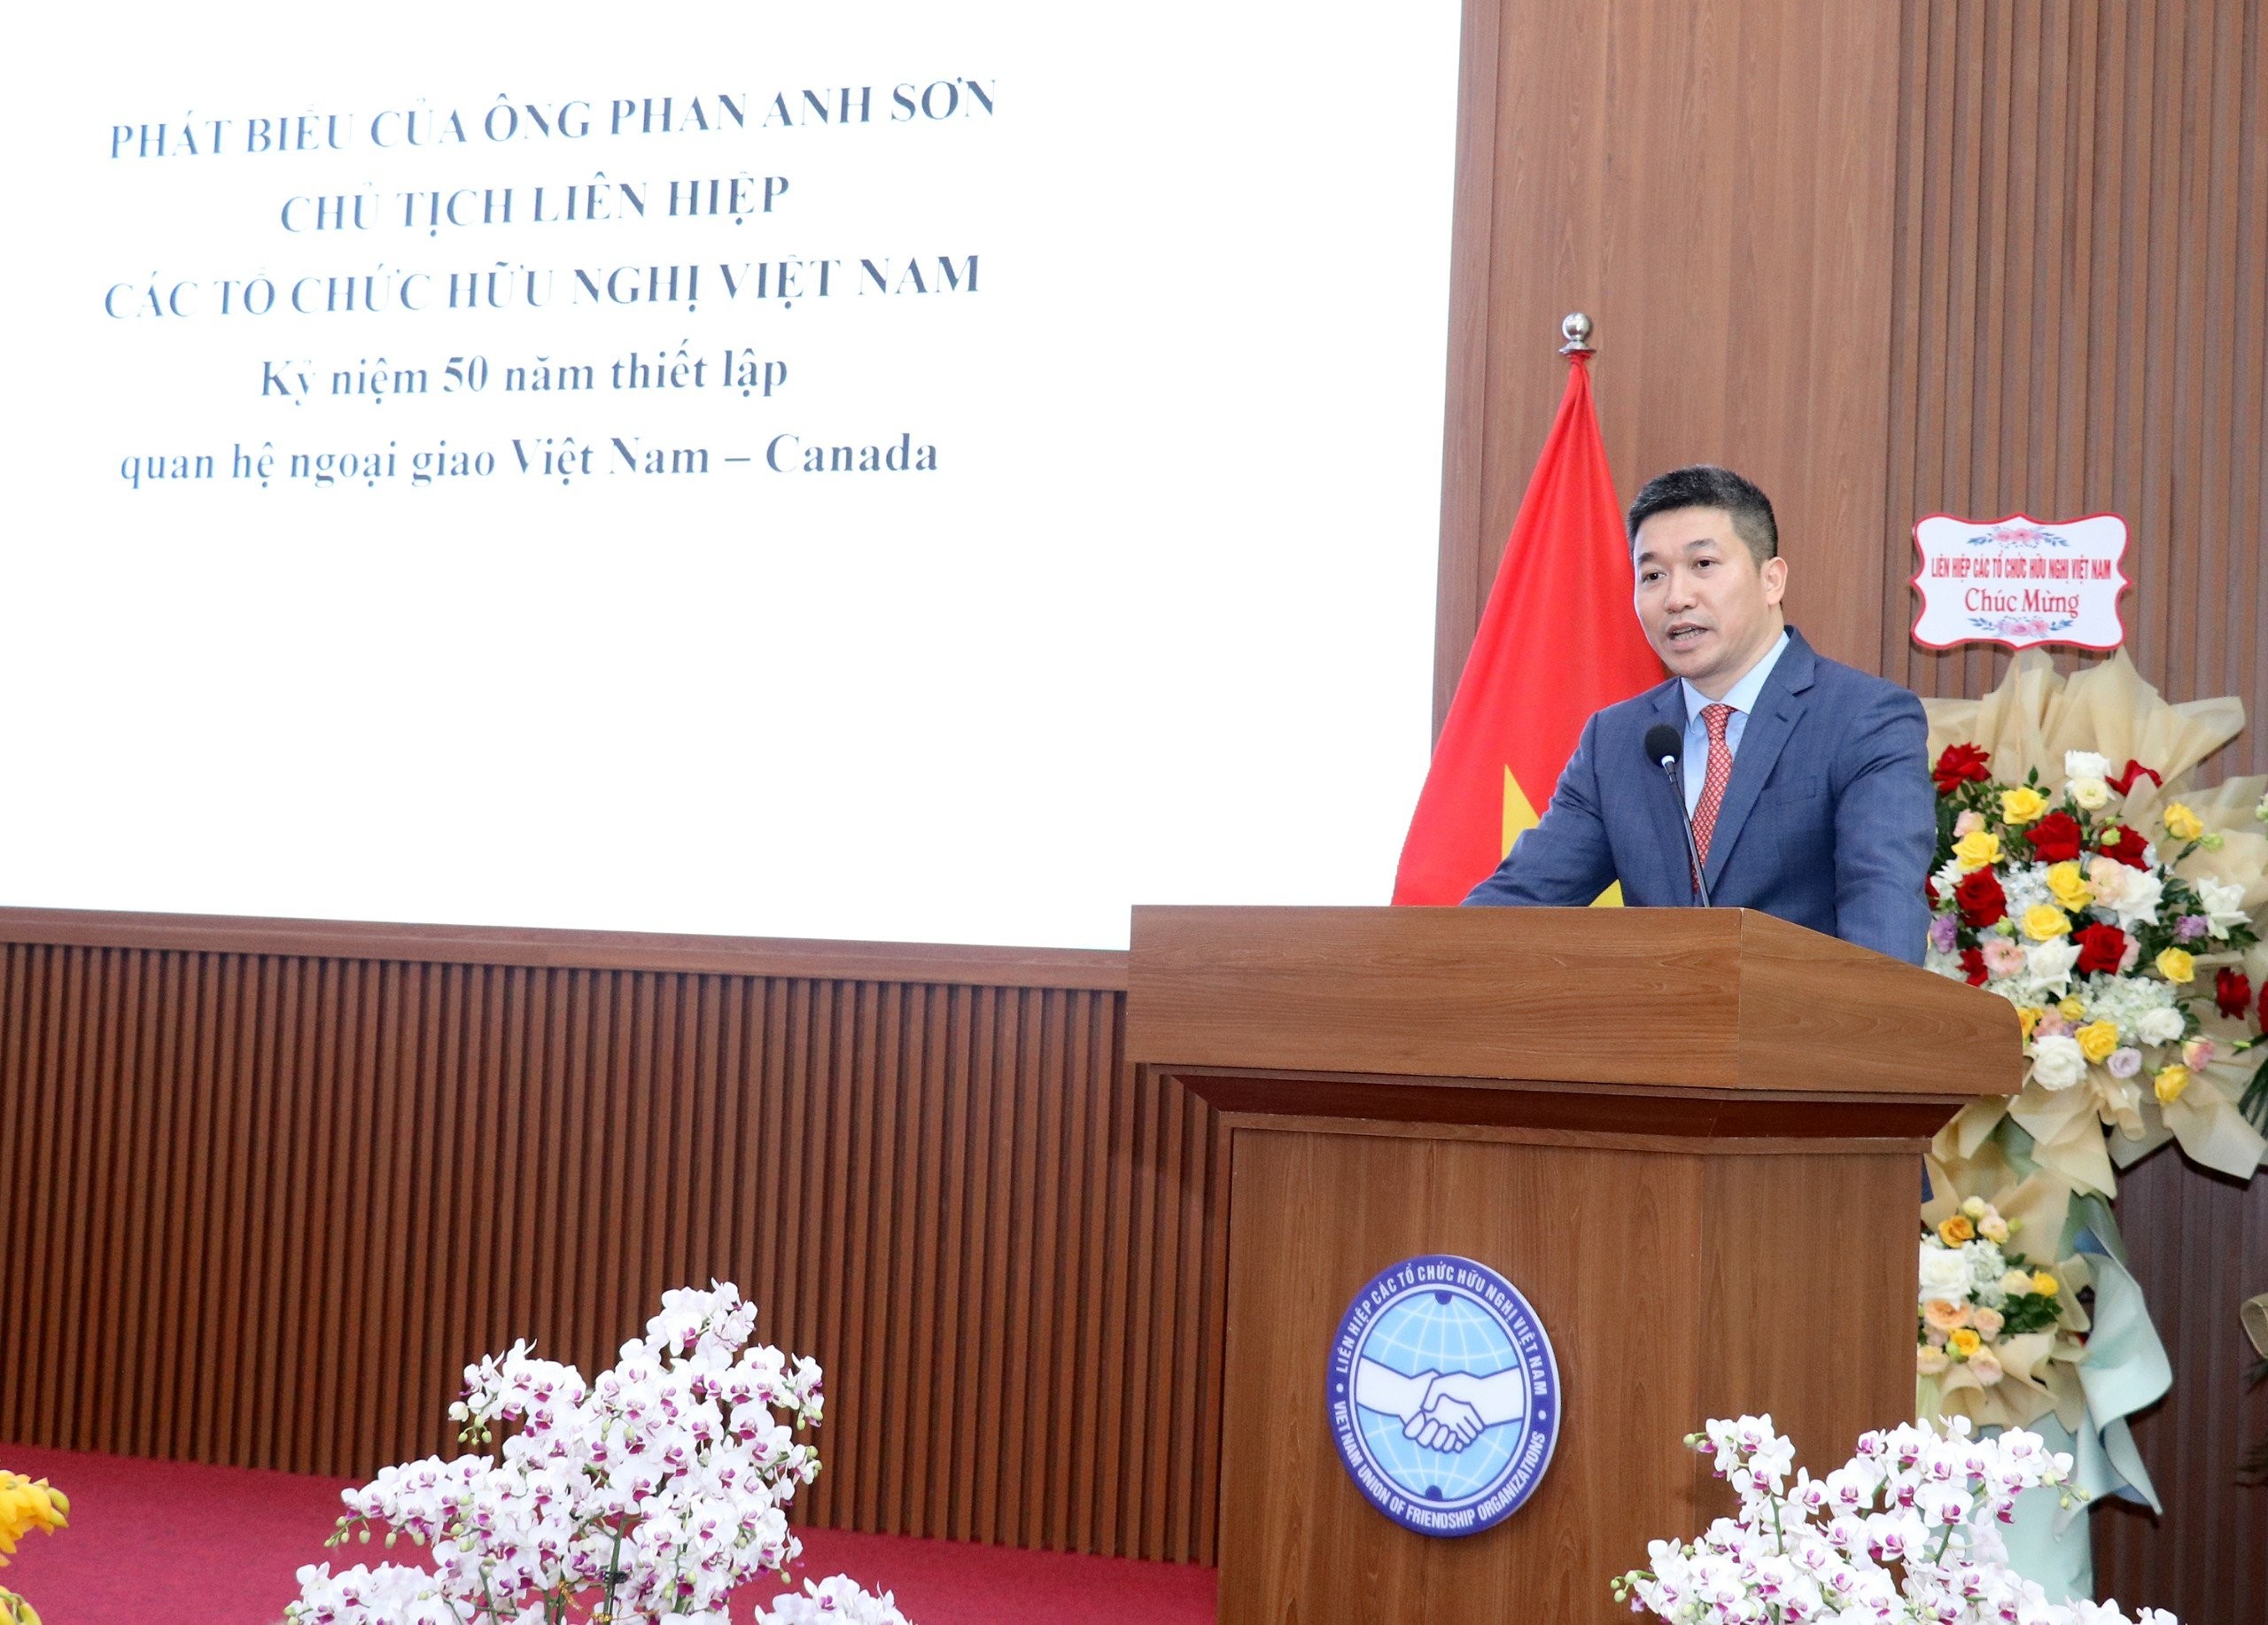 Chủ tịch VUFO Phan Anh Sơn phát biểu tại hội nghị. (Ảnh: Thu Hà)